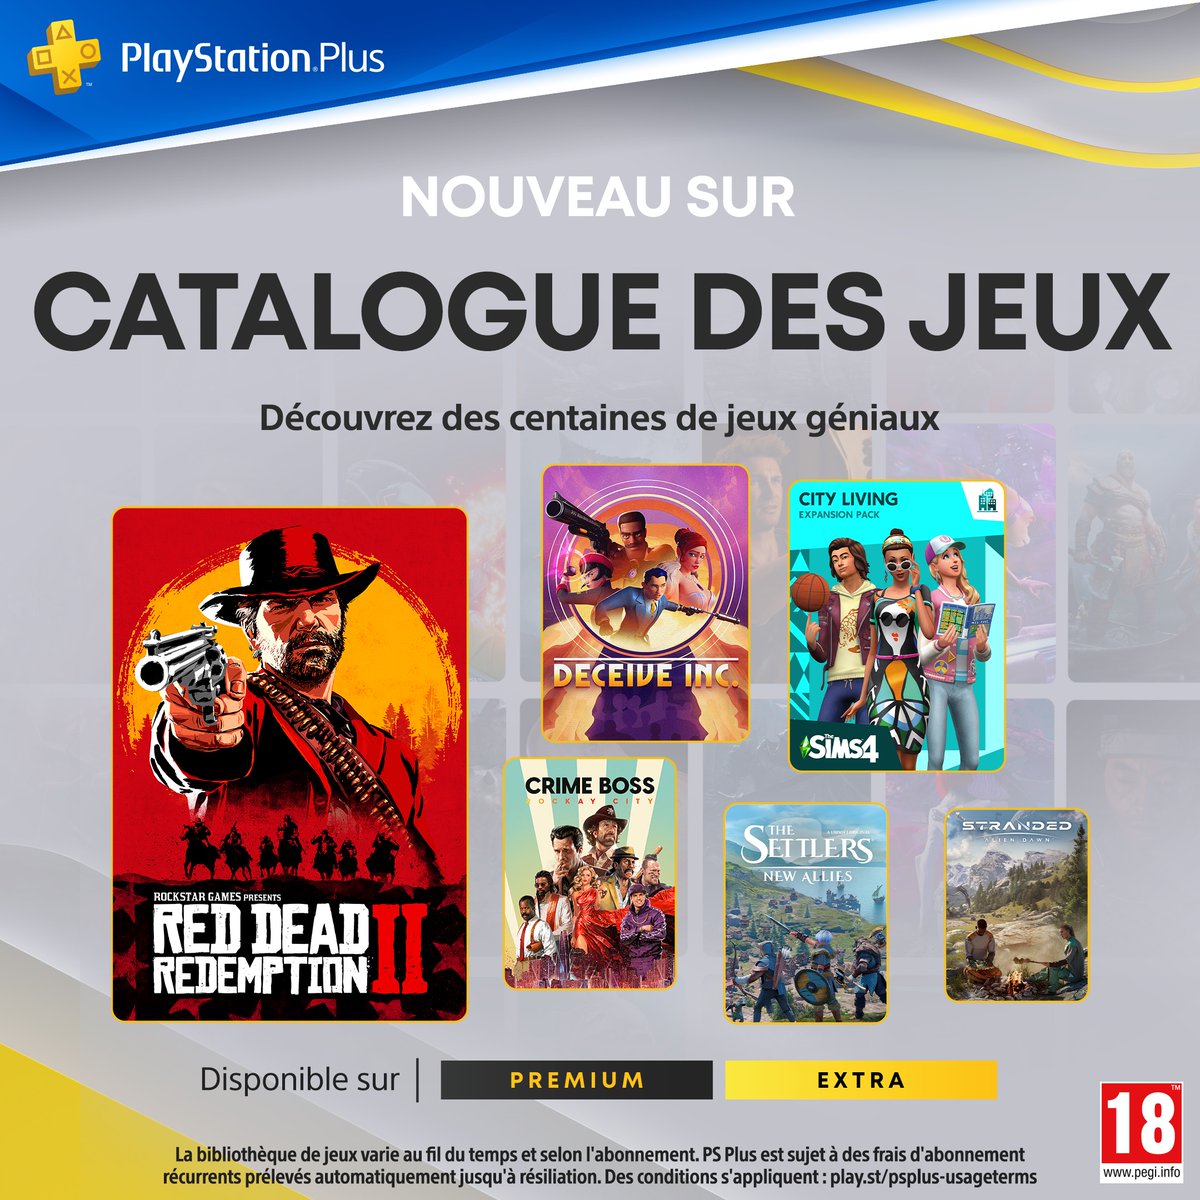 Dès le 21 mai retrouvez 13 nouveaux jeux ajoutés au catalogue PlayStation Plus dont: 🏜️ Red Dead Redemption 2 🕵️ Deceive Inc. 😺 Cat Quest I & II 📱 Watch Dogs Toute la liste dispo ici : play.st/44Qqfir